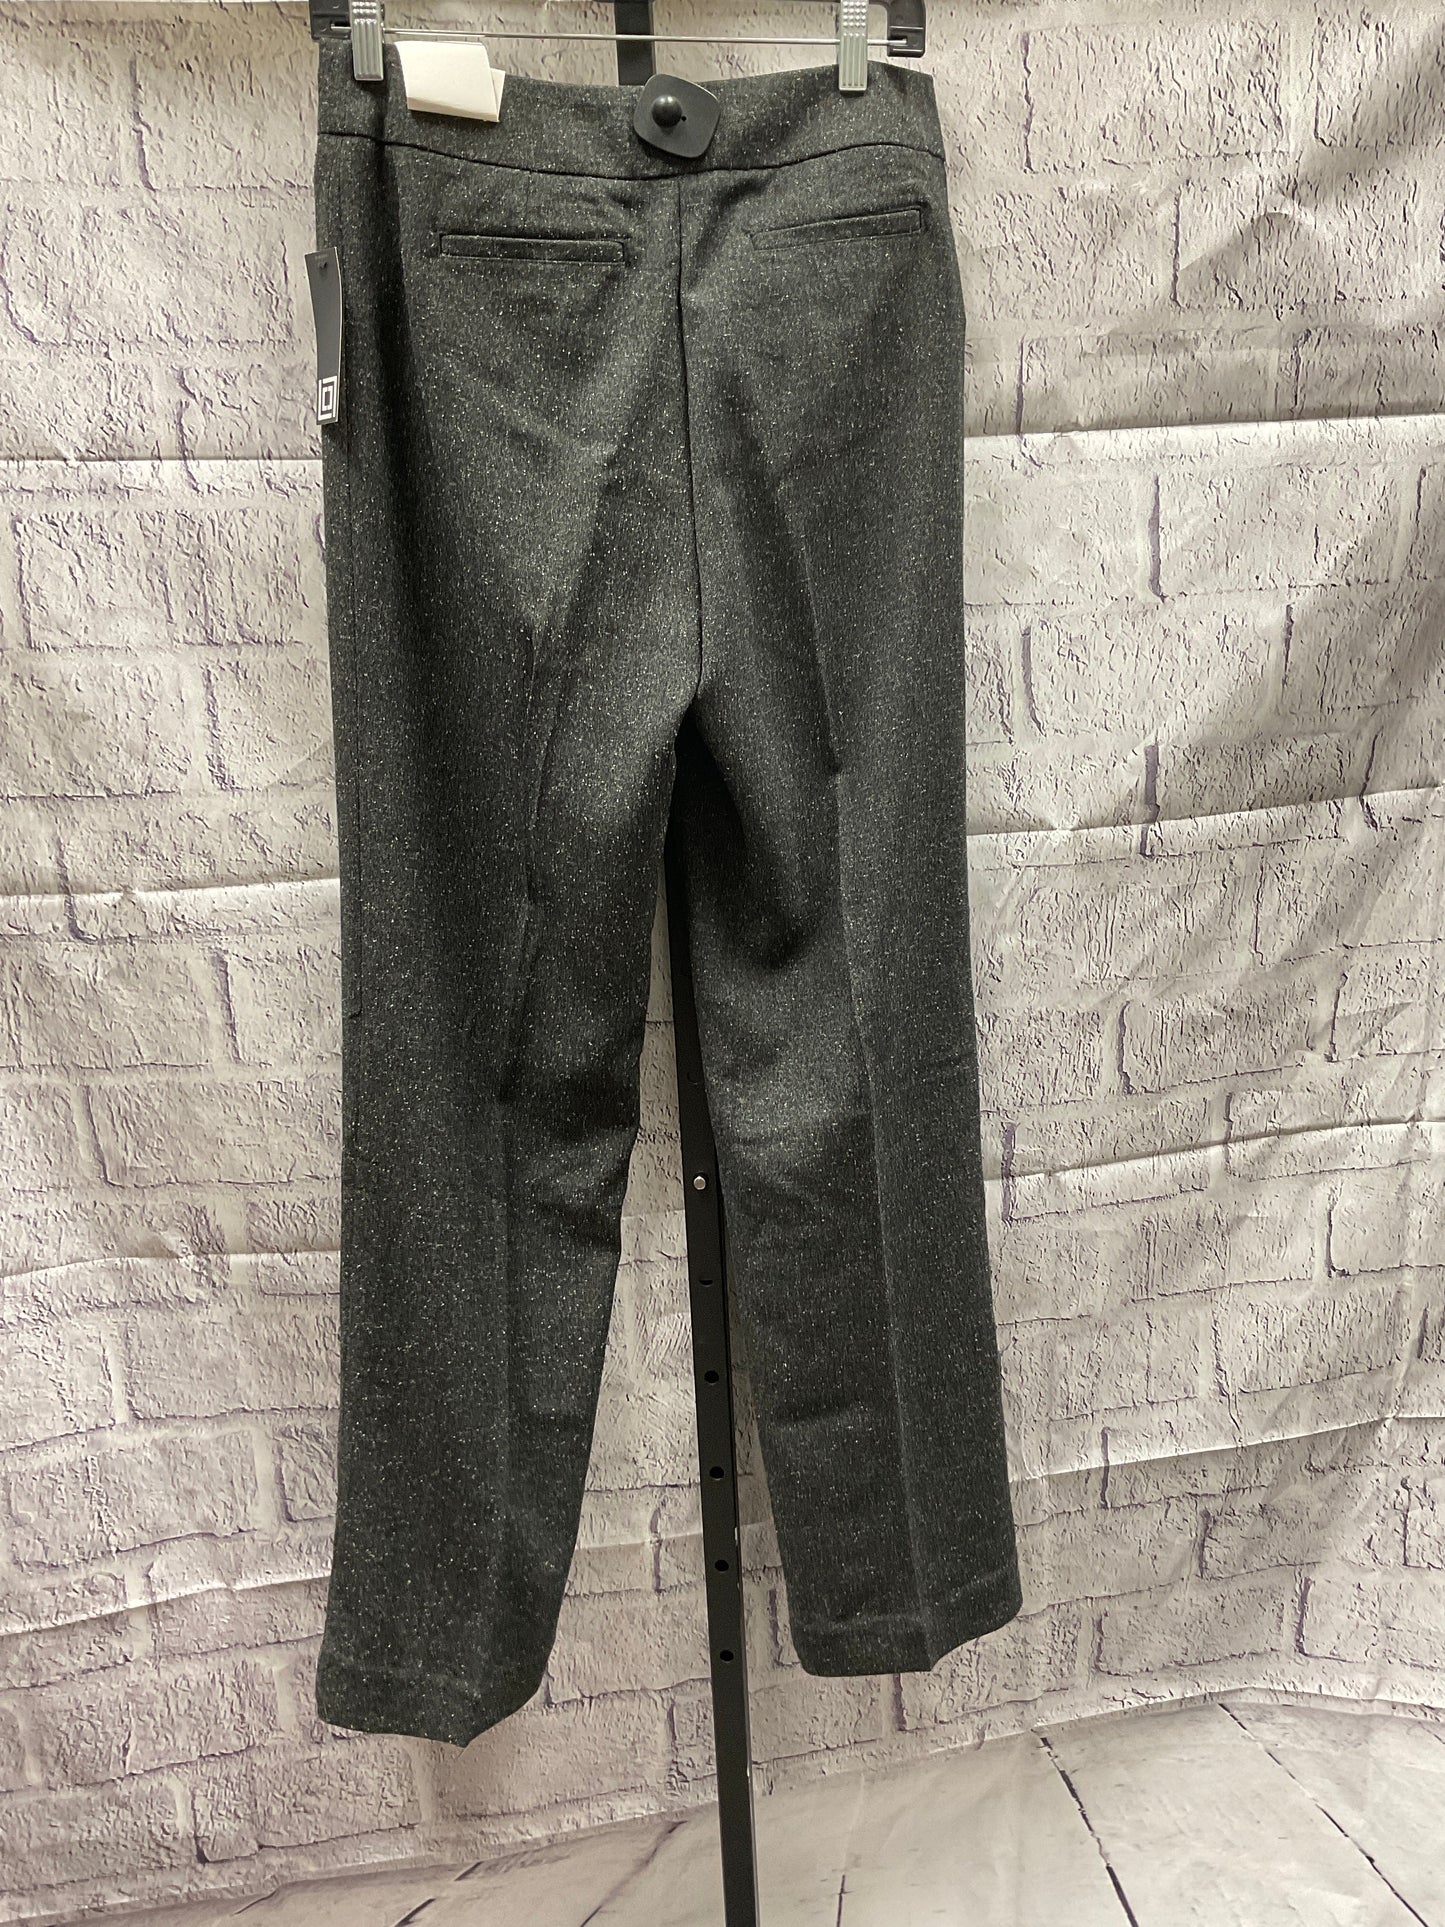 Pants Work/dress By Liz Claiborne  Size: 6